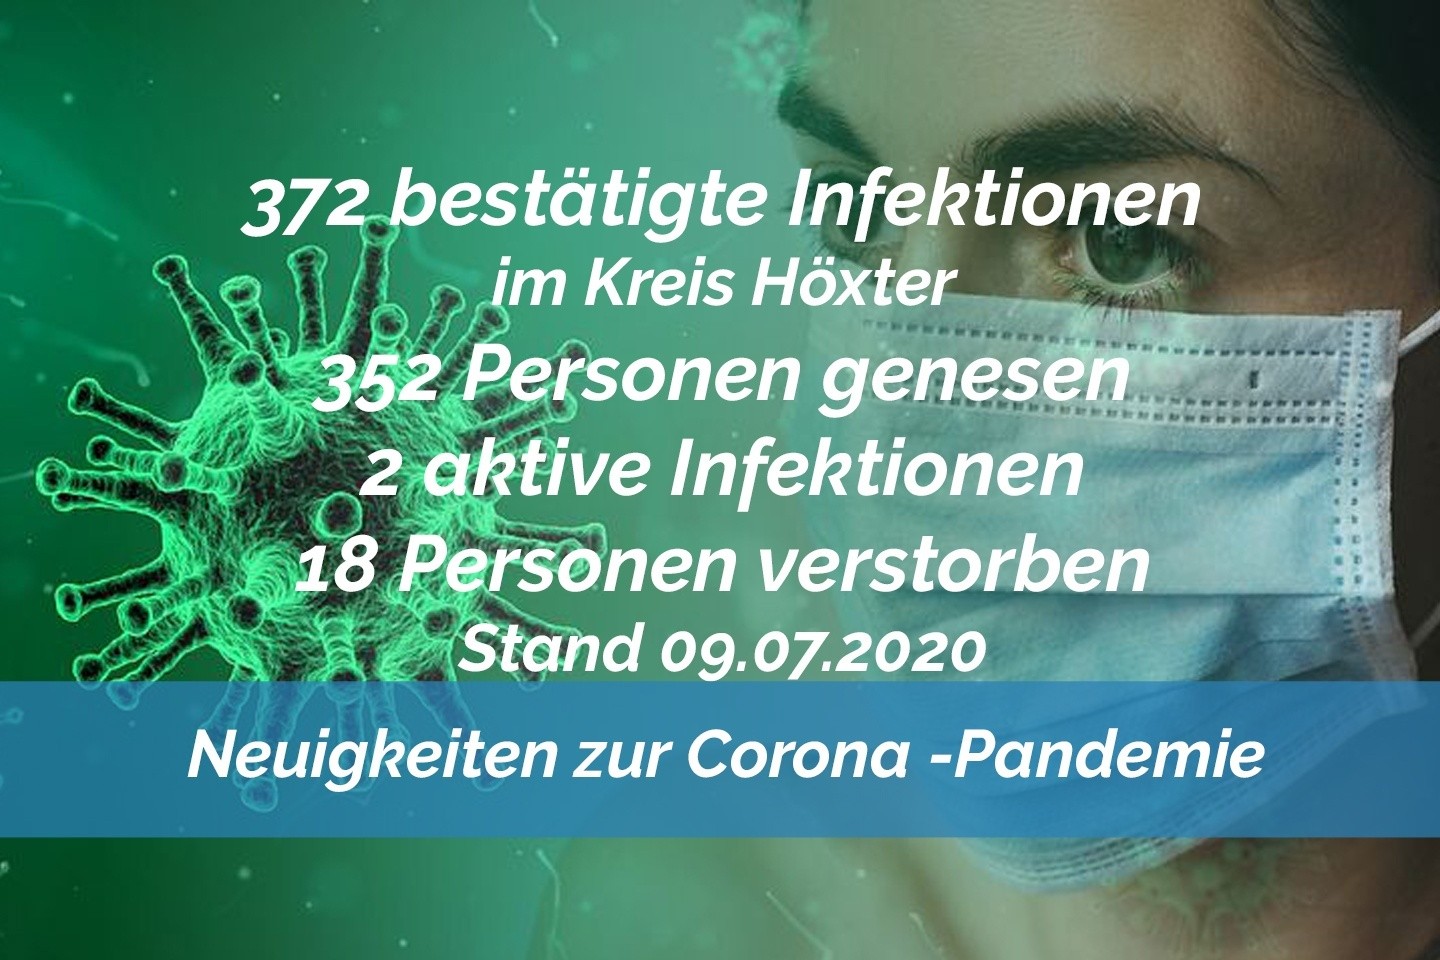 Update vom 09. Juli: Immer noch 372 bestätigte Infektionen mit dem neuen Coronavirus im Kreis Höxter